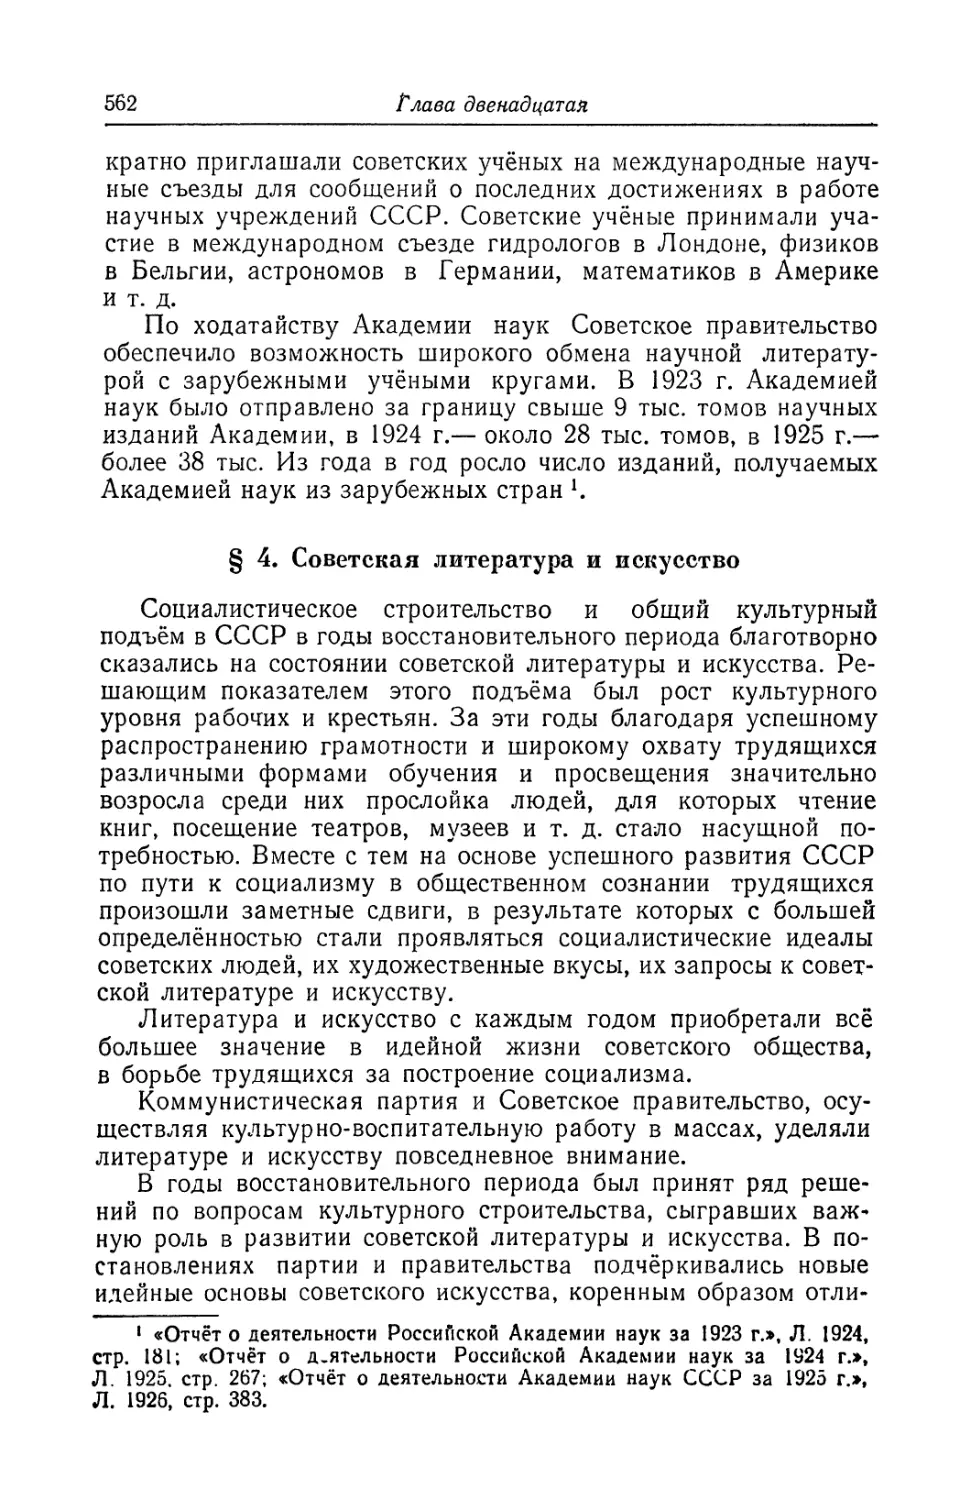 § 4. Советская литература и искусство